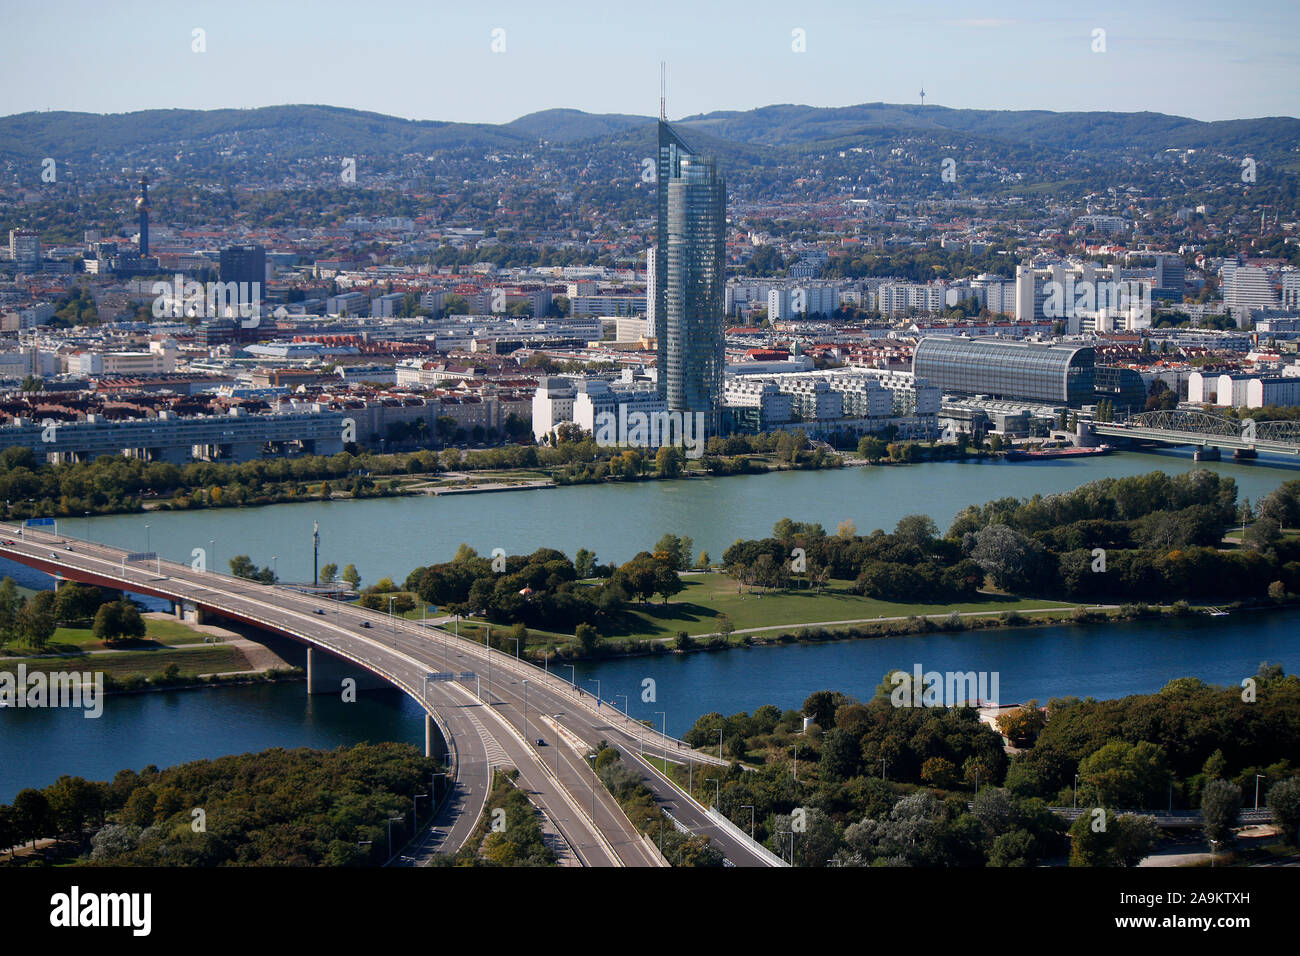 Luftbild : Donau/ Danube, tour du millénaire, Skyline, Wien, Österreich/ Vienne, Autriche (nur für redaktionelle Verwendung. Keine Werbung. Referenzdate Banque D'Images